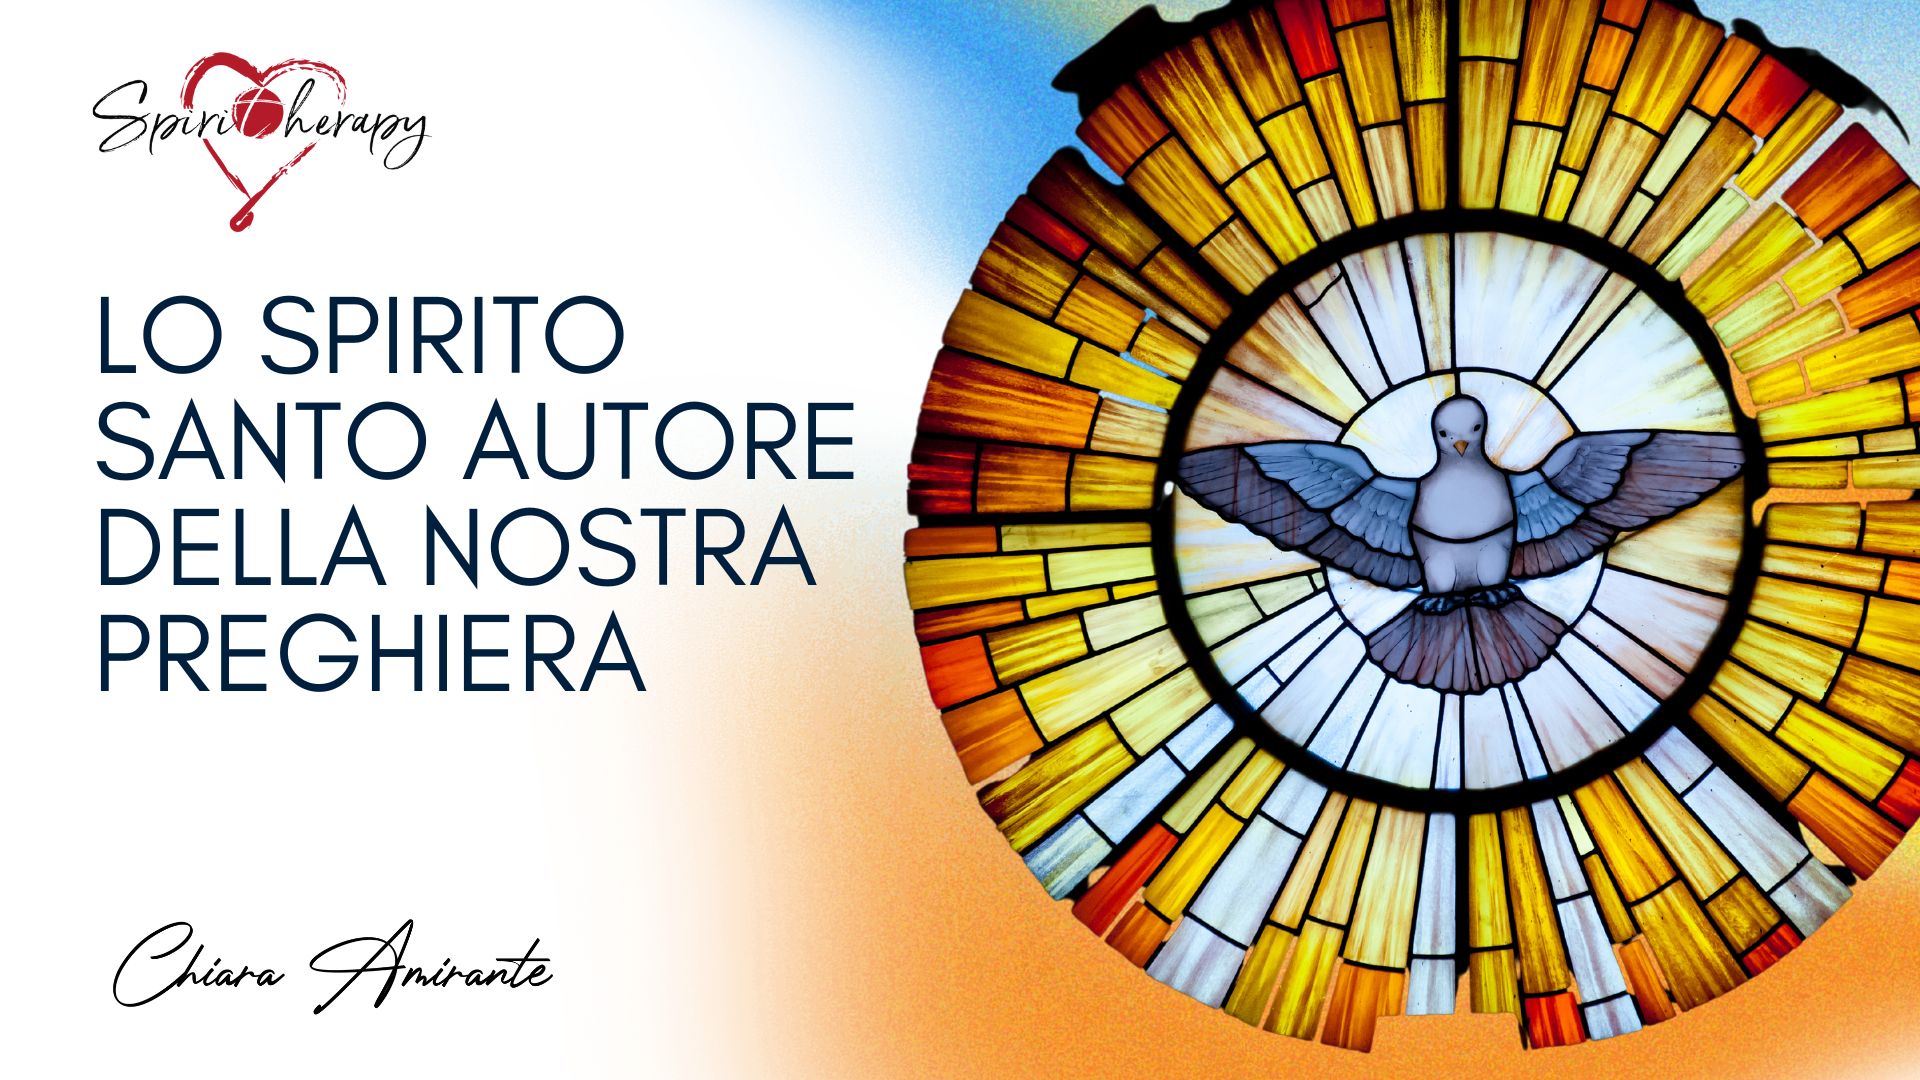 PENTECOSTE - Lo Spirito Santo autore della nostra preghiera - Chiara Amirante